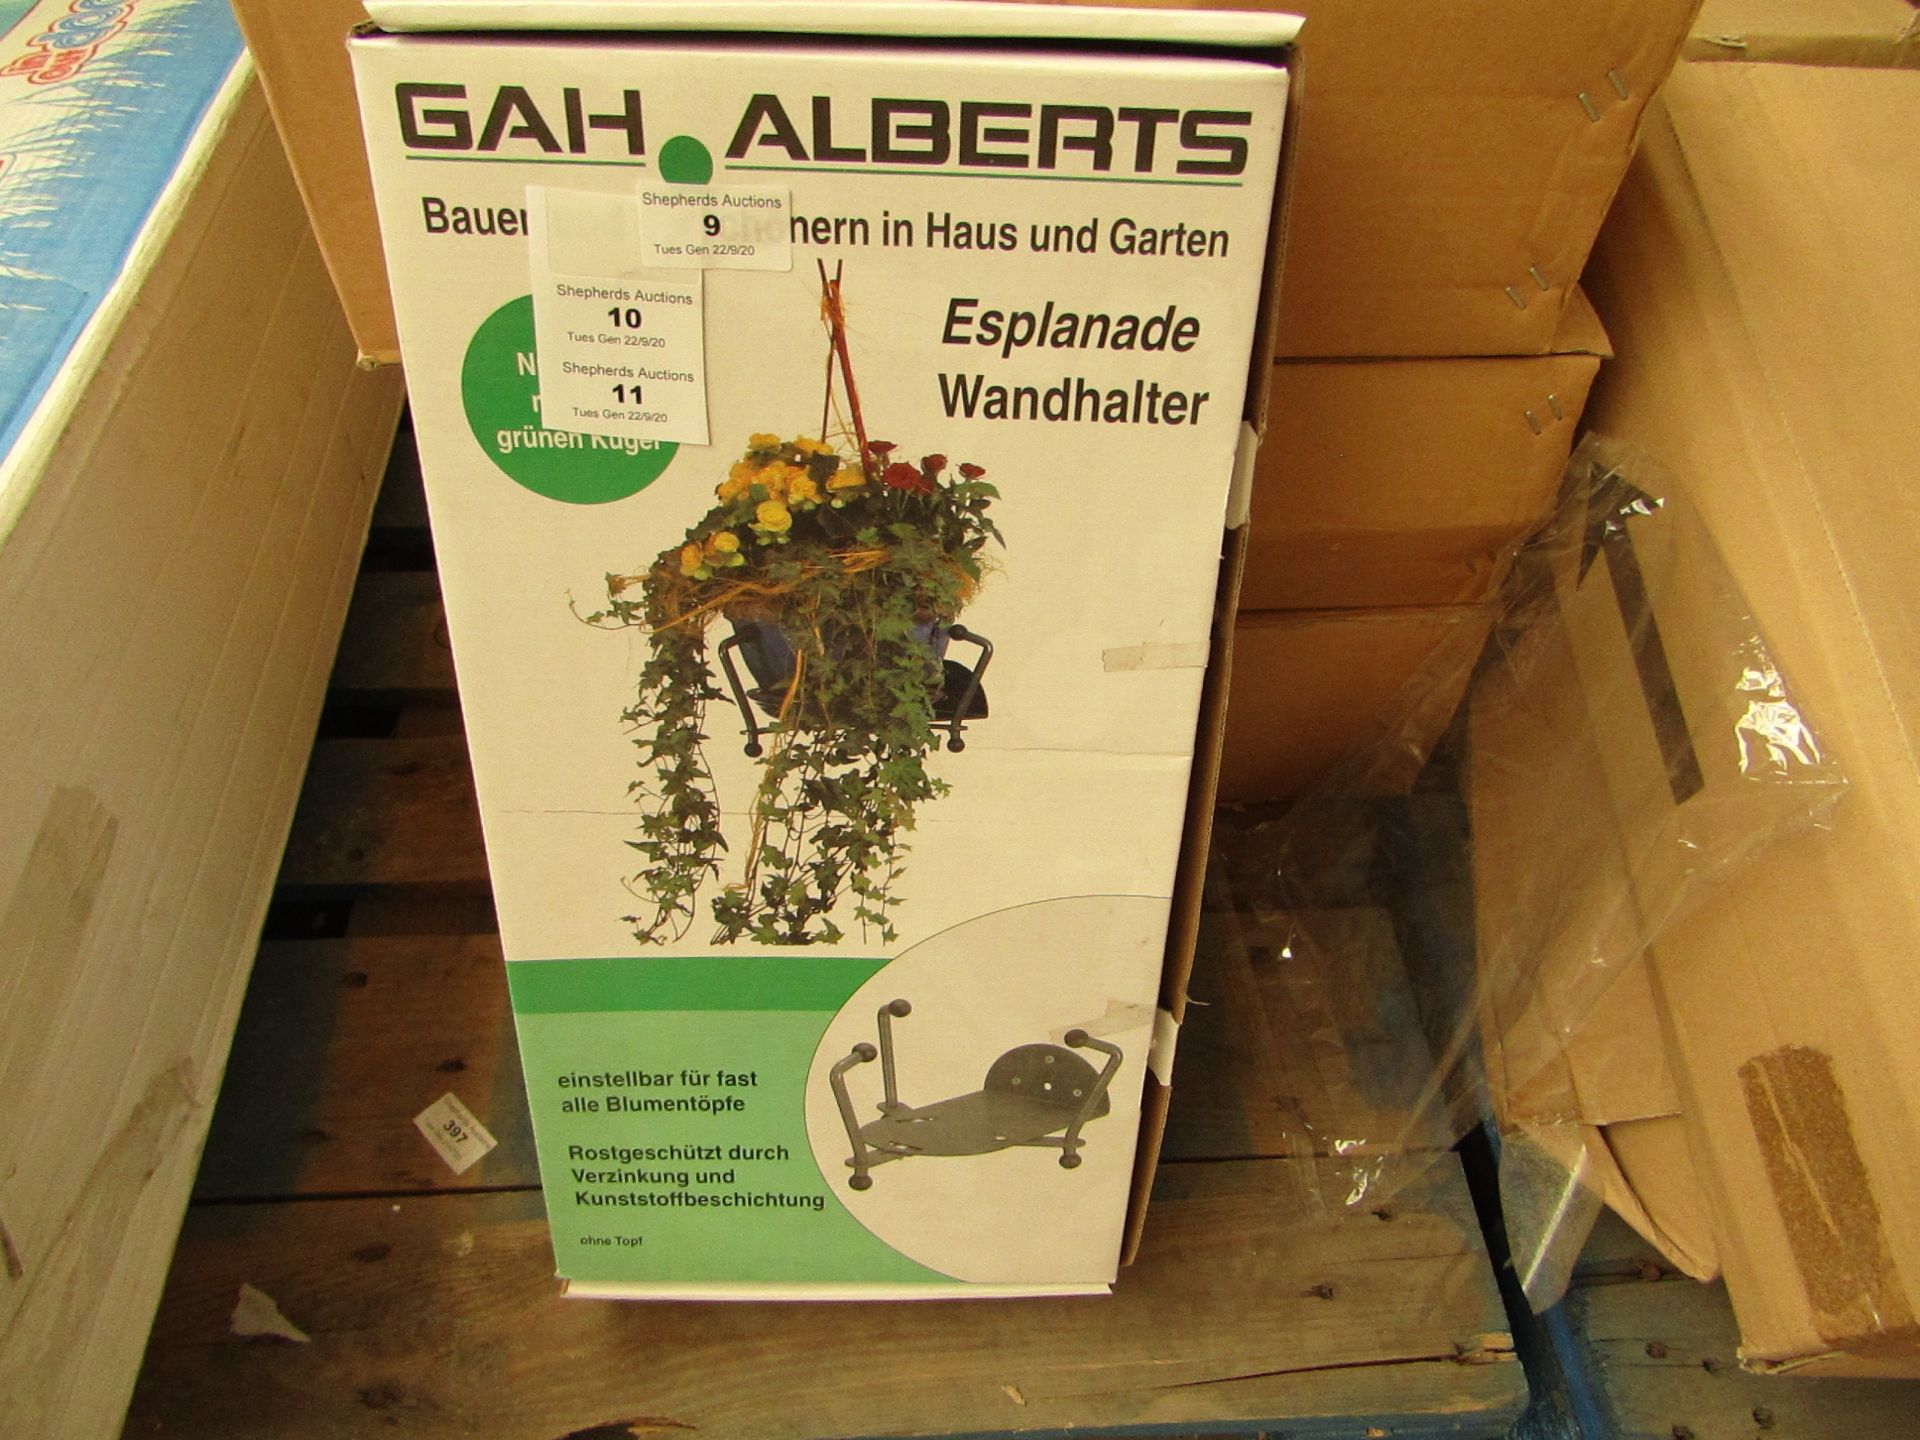 3 x Gah Alberts Flower Pot/Basket Wall or Freestanding Fixtures new & packaged